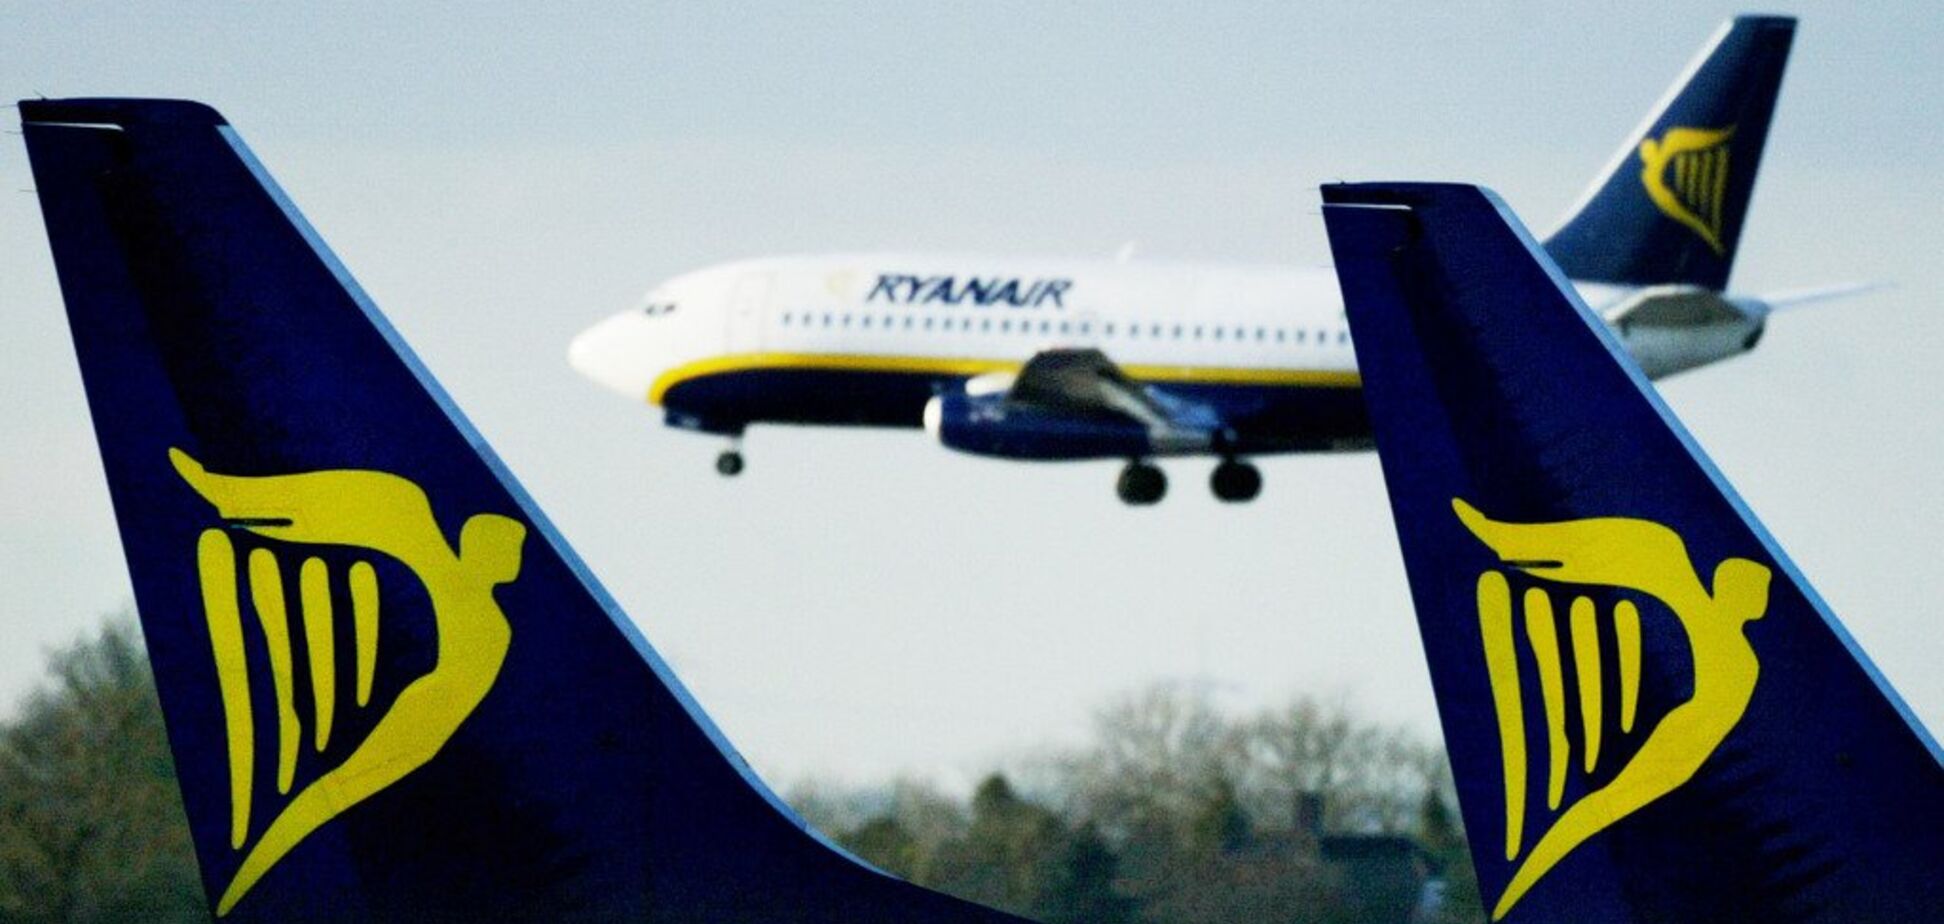 Они решительны: в Европе пилоты Ryanair объявили крупнейшую забастовку